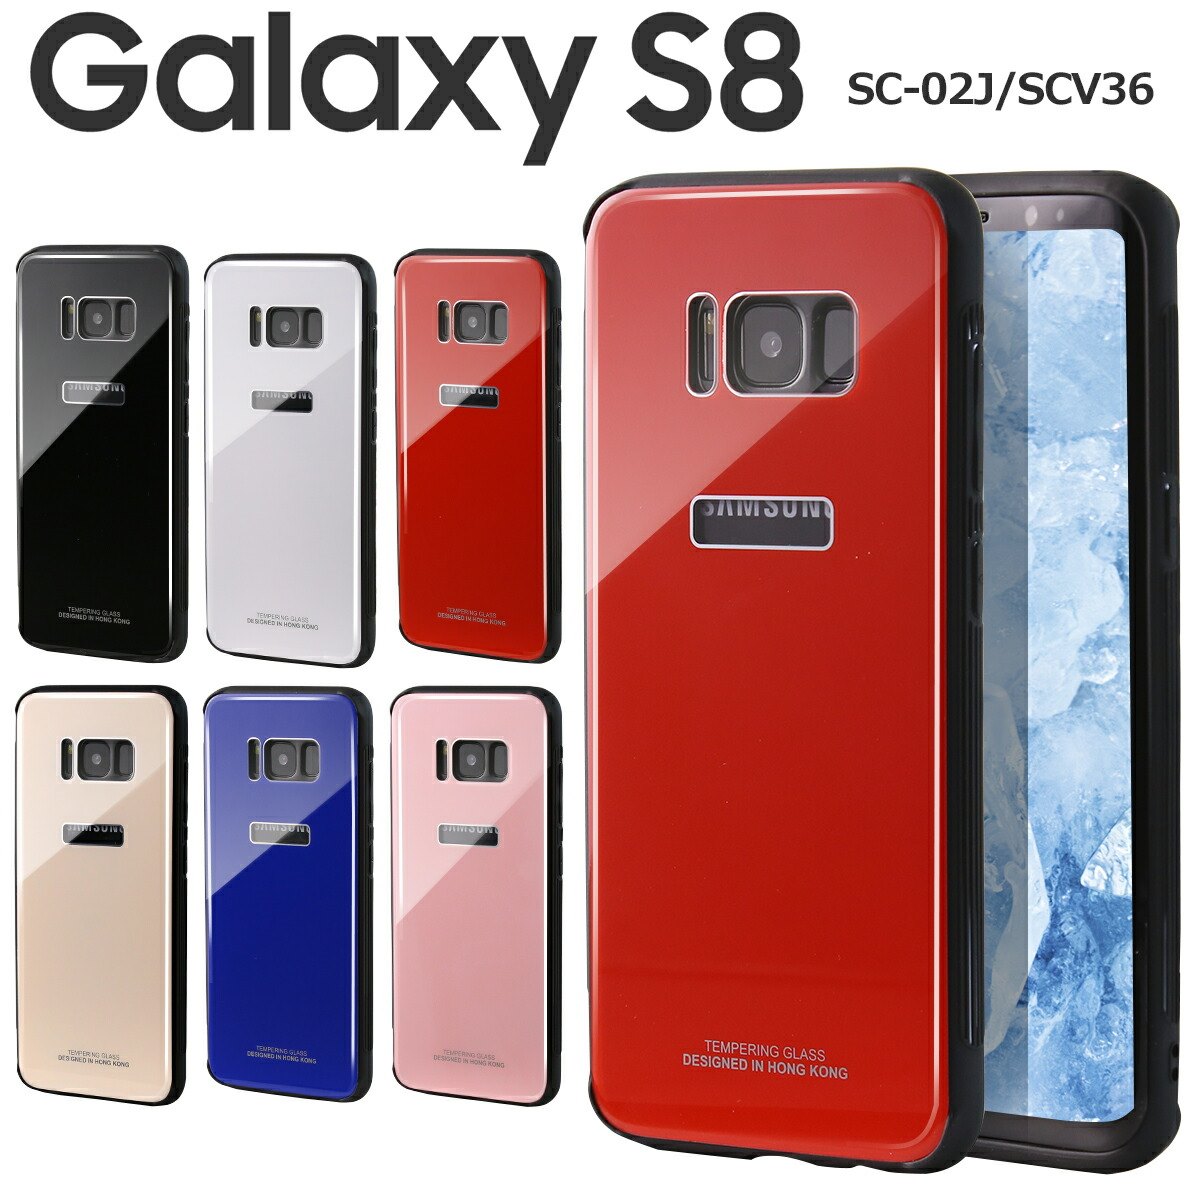 【スーパーセール半額】 Galaxy S8 スマホケース 韓国 SC-02J SCV36 背面9Hガラスケース ギャラクシーS8 ギャラクシー クリスタルケース スマホケース かっこいい おしゃれ 大人 Crystal ガラス スマホカバー 人気 かわいい ブランド カバー ポイント消化 sale